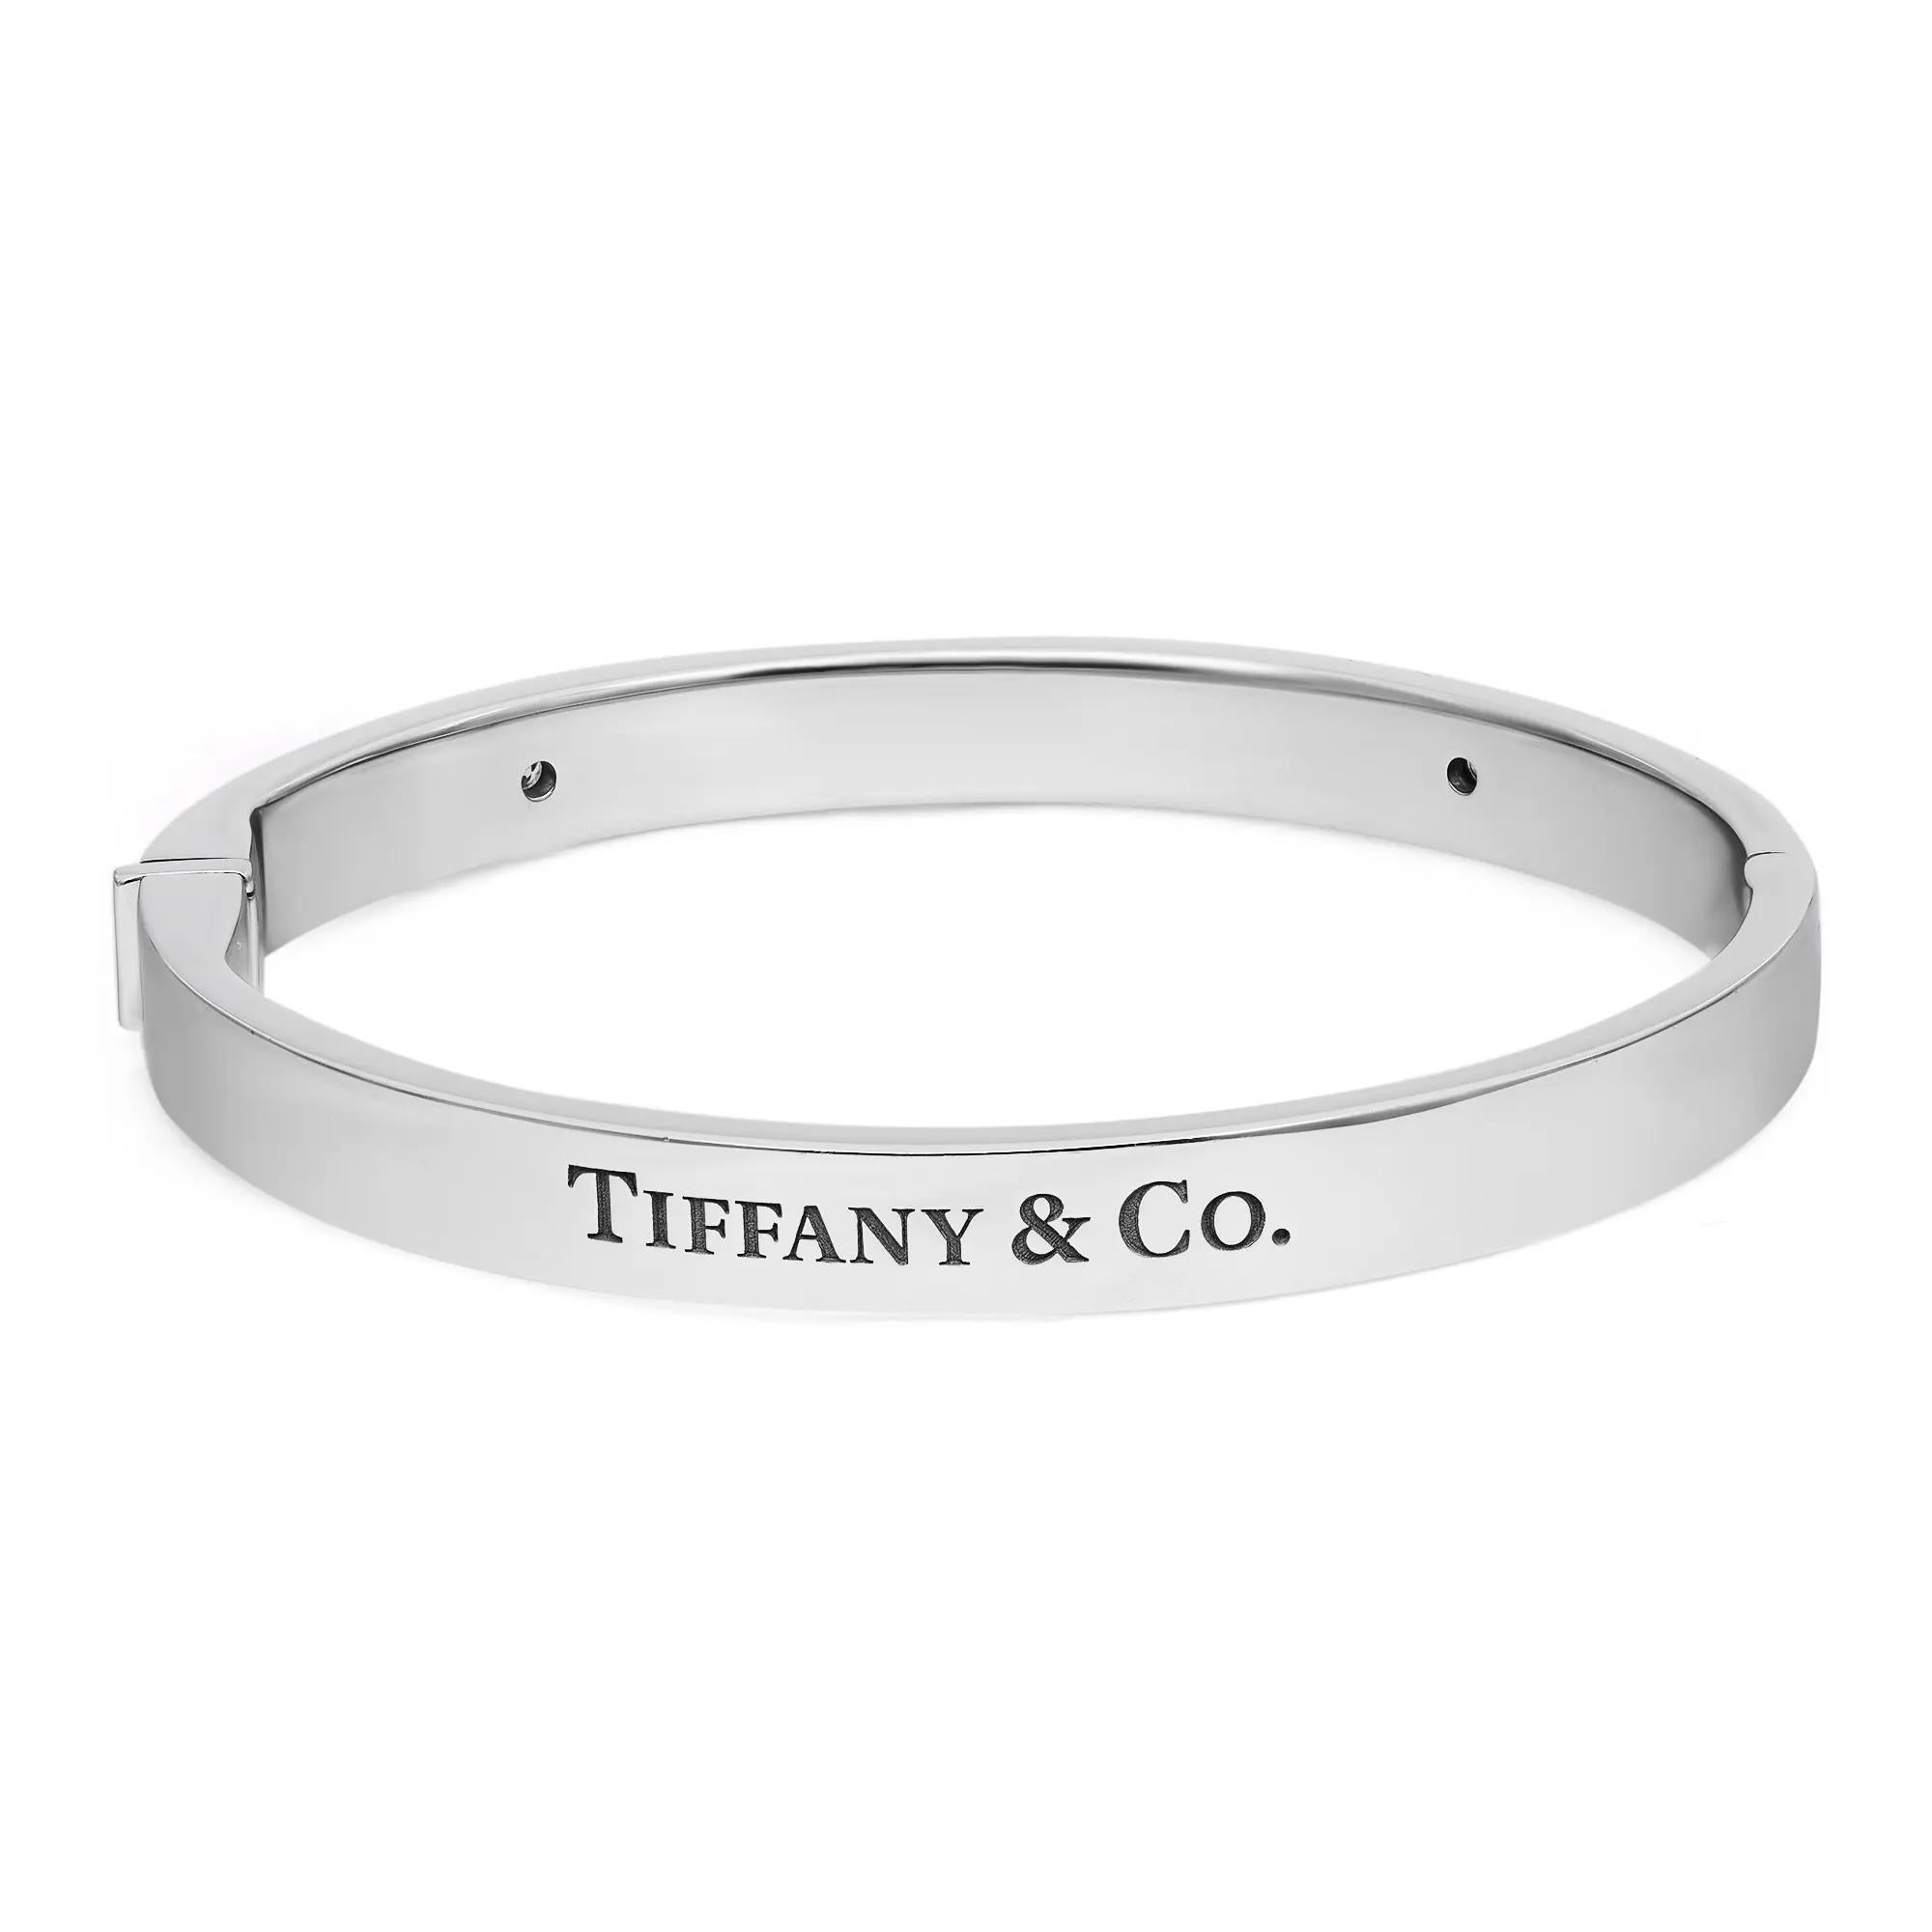 Audacieux et magnifique, ce bracelet Tiffany & Co. Le bracelet à charnière avec logo à deux diamants est une véritable essence de l'esthétique joaillière. Whiting en or blanc lustré 18K. Ce bracelet présente un anneau articulé de forme ovale serti